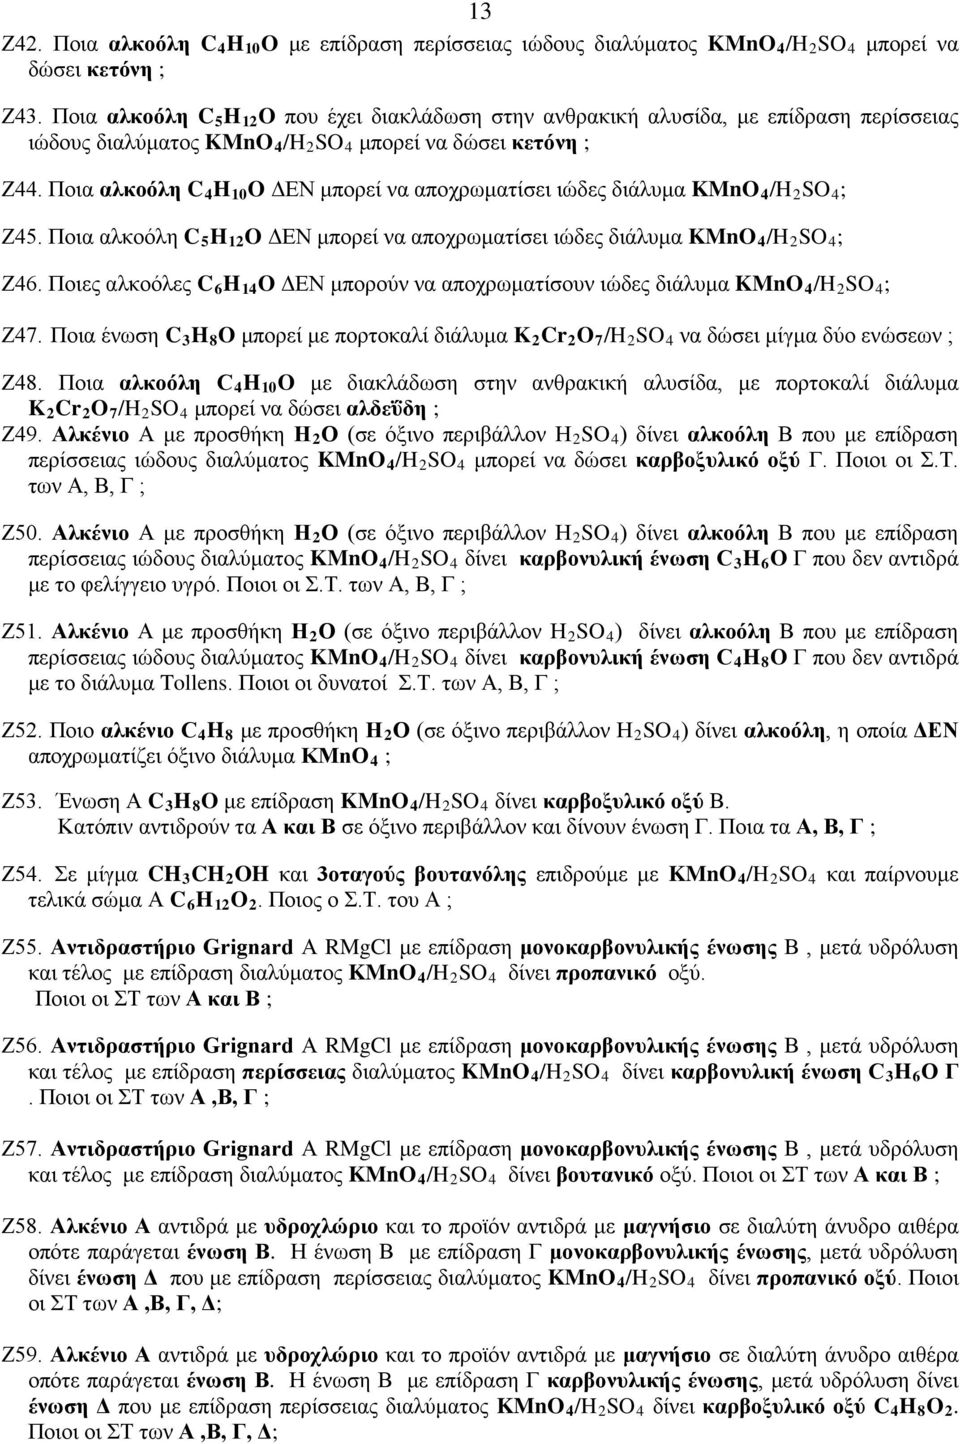 Ποια αλκοόλη C 4 H 10 O ΔΕΝ μπορεί να αποχρωματίσει ιώδες διάλυμα KMnO 4 /H 2 SO 4 ; Ζ45. Ποια αλκοόλη C 5 H 12 O ΔΕΝ μπορεί να αποχρωματίσει ιώδες διάλυμα KMnO 4 /H 2 SO 4 ; Ζ46.